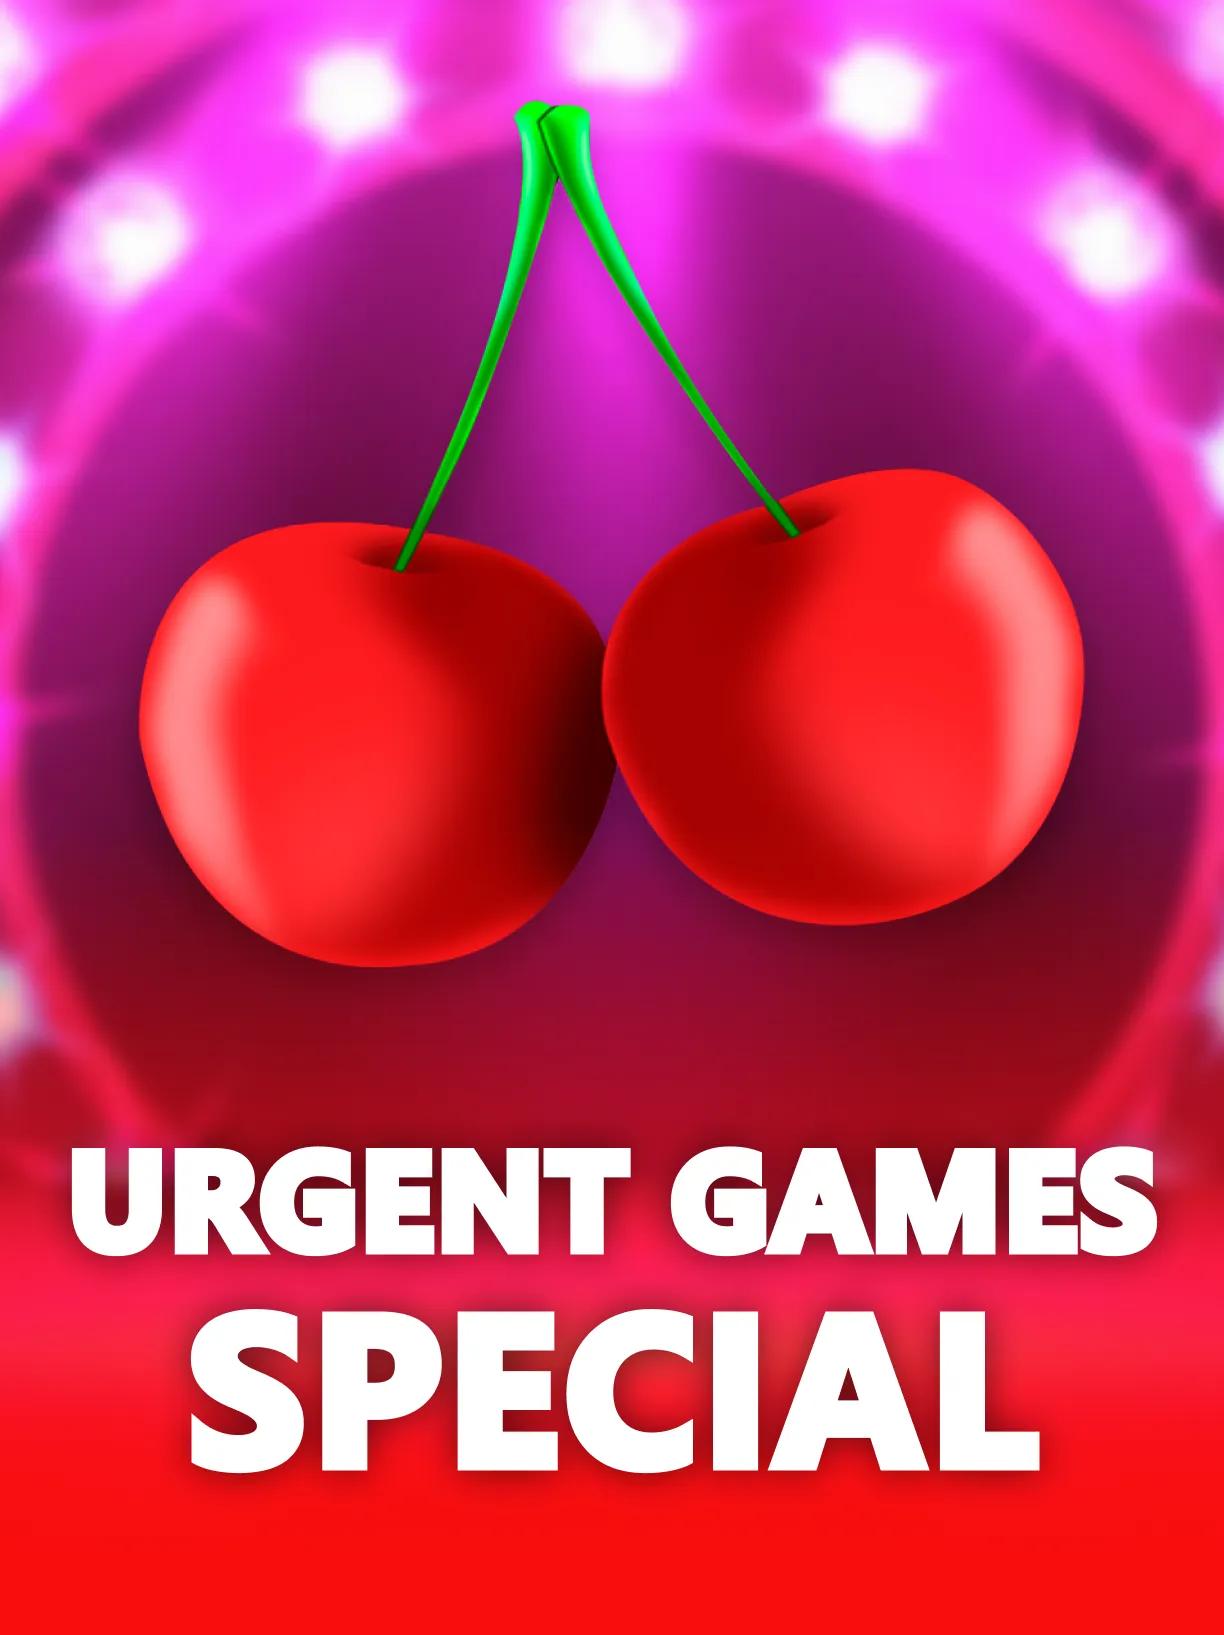 ug_Urgent_Games_Special_square.webp